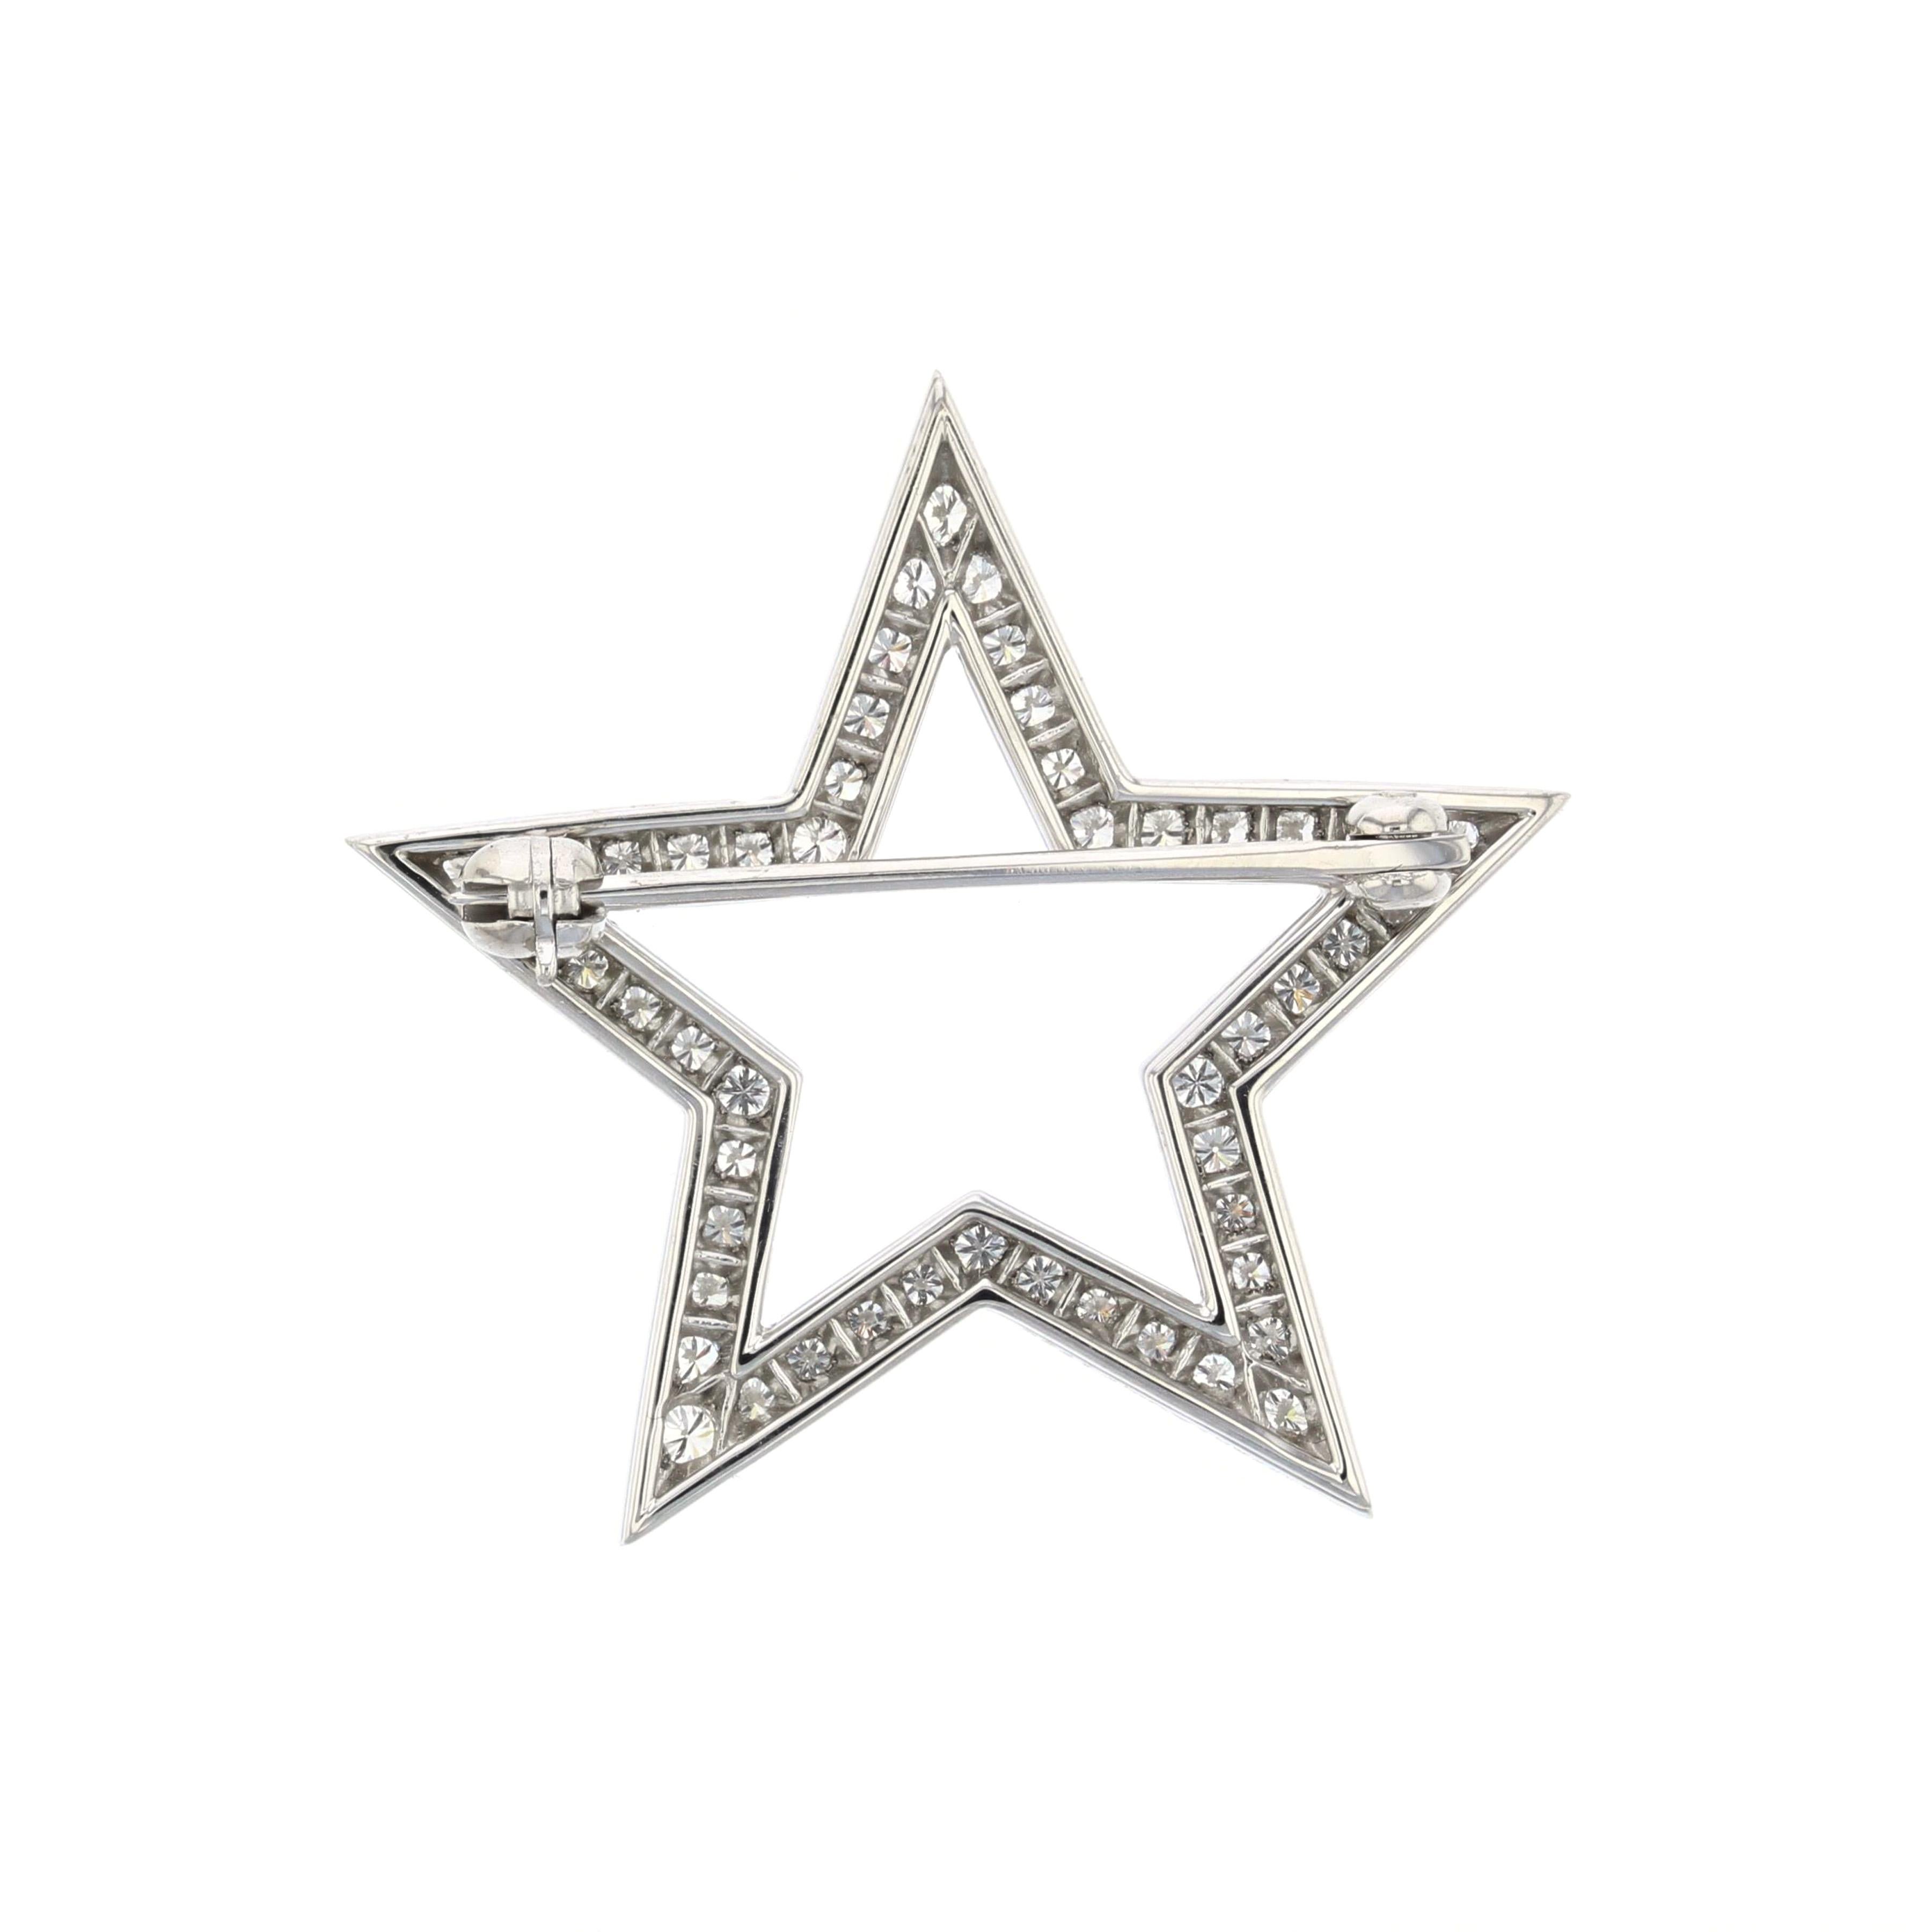 Platinbrosche von Tiffany & Co. mit runden Diamanten in Form eines offenen Sterns.  Mit fünfzig runden Diamanten von insgesamt 0,85 Karat, Farbe F-G und Reinheit VVS2-VS1.  Misst 1 1/8 Zoll im Durchmesser.  